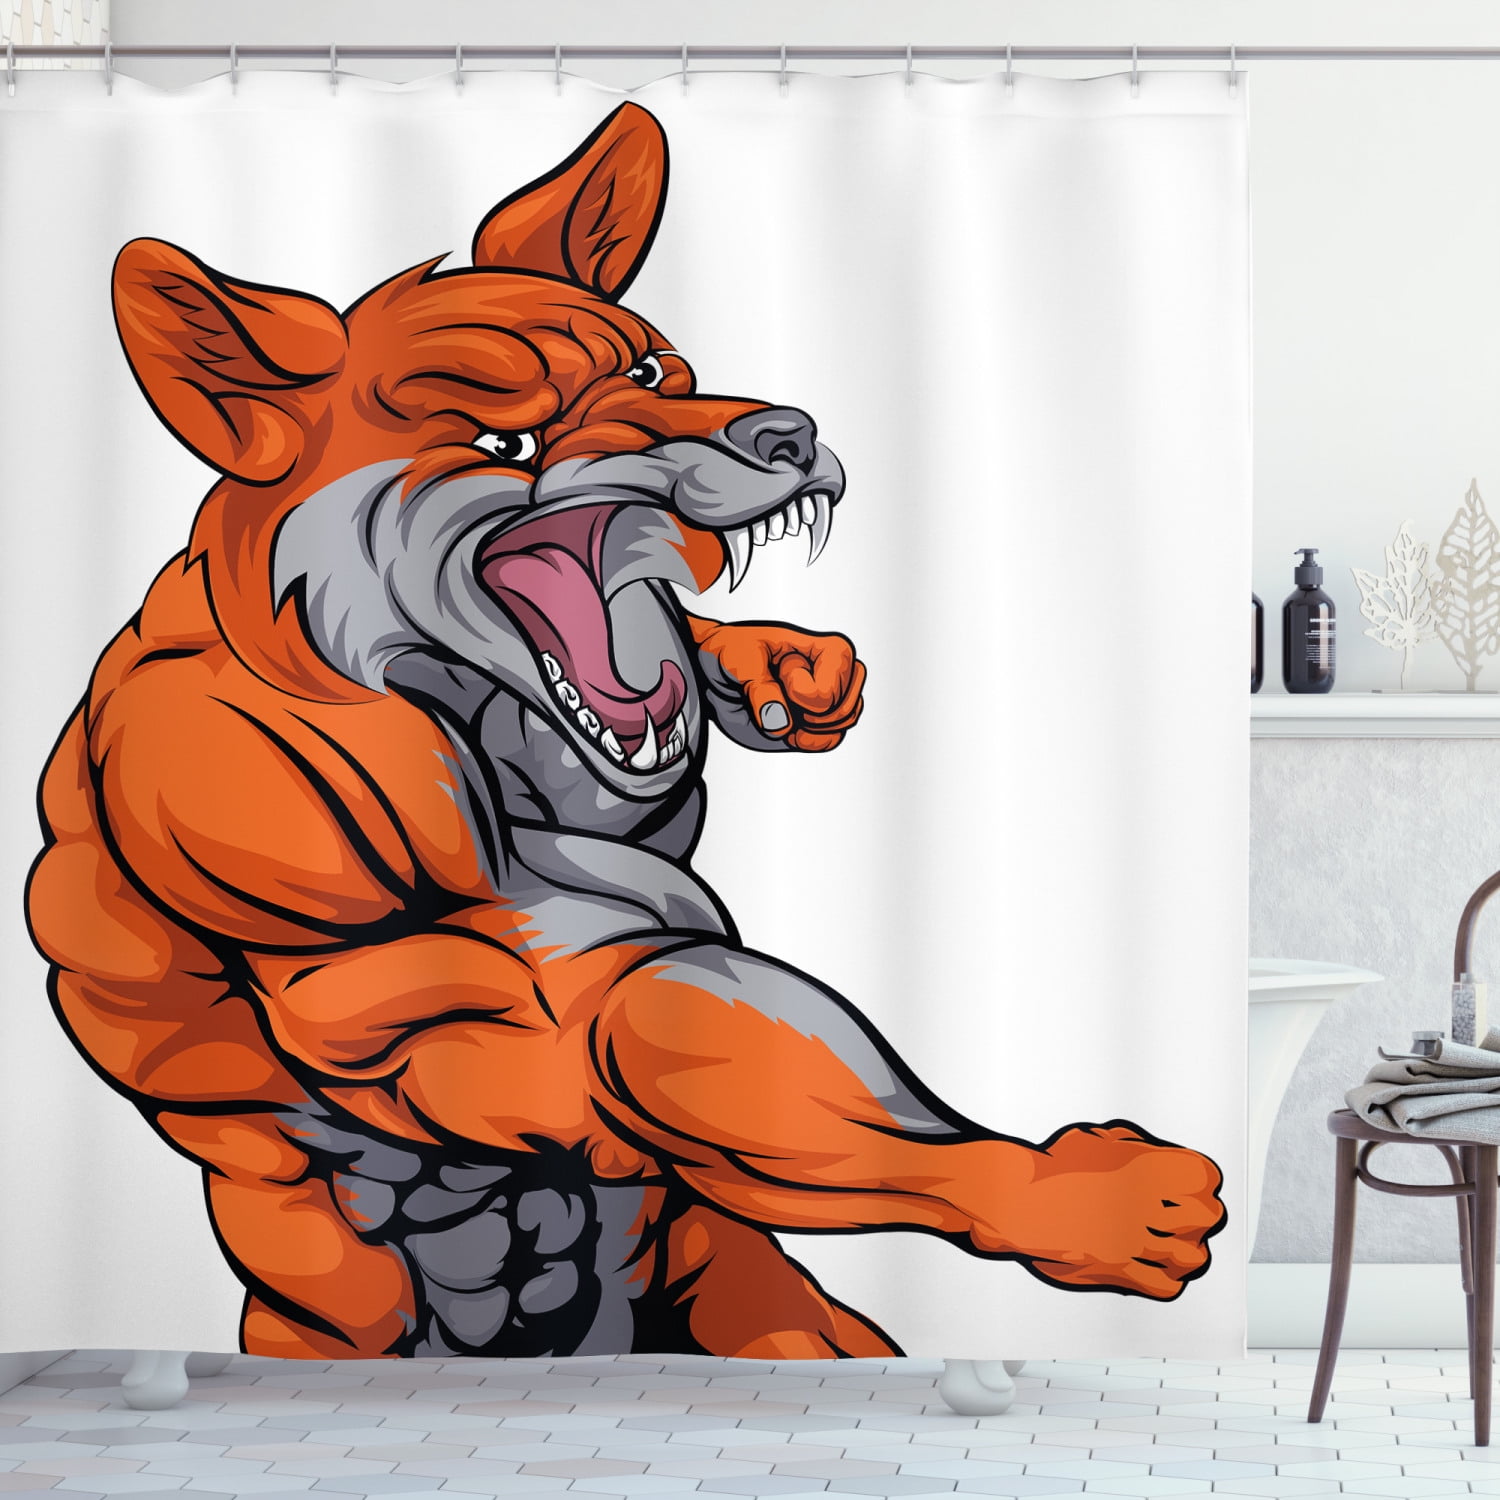 Fox Shower Curtain Muscular Fierce, Monster High Shower Curtain Set